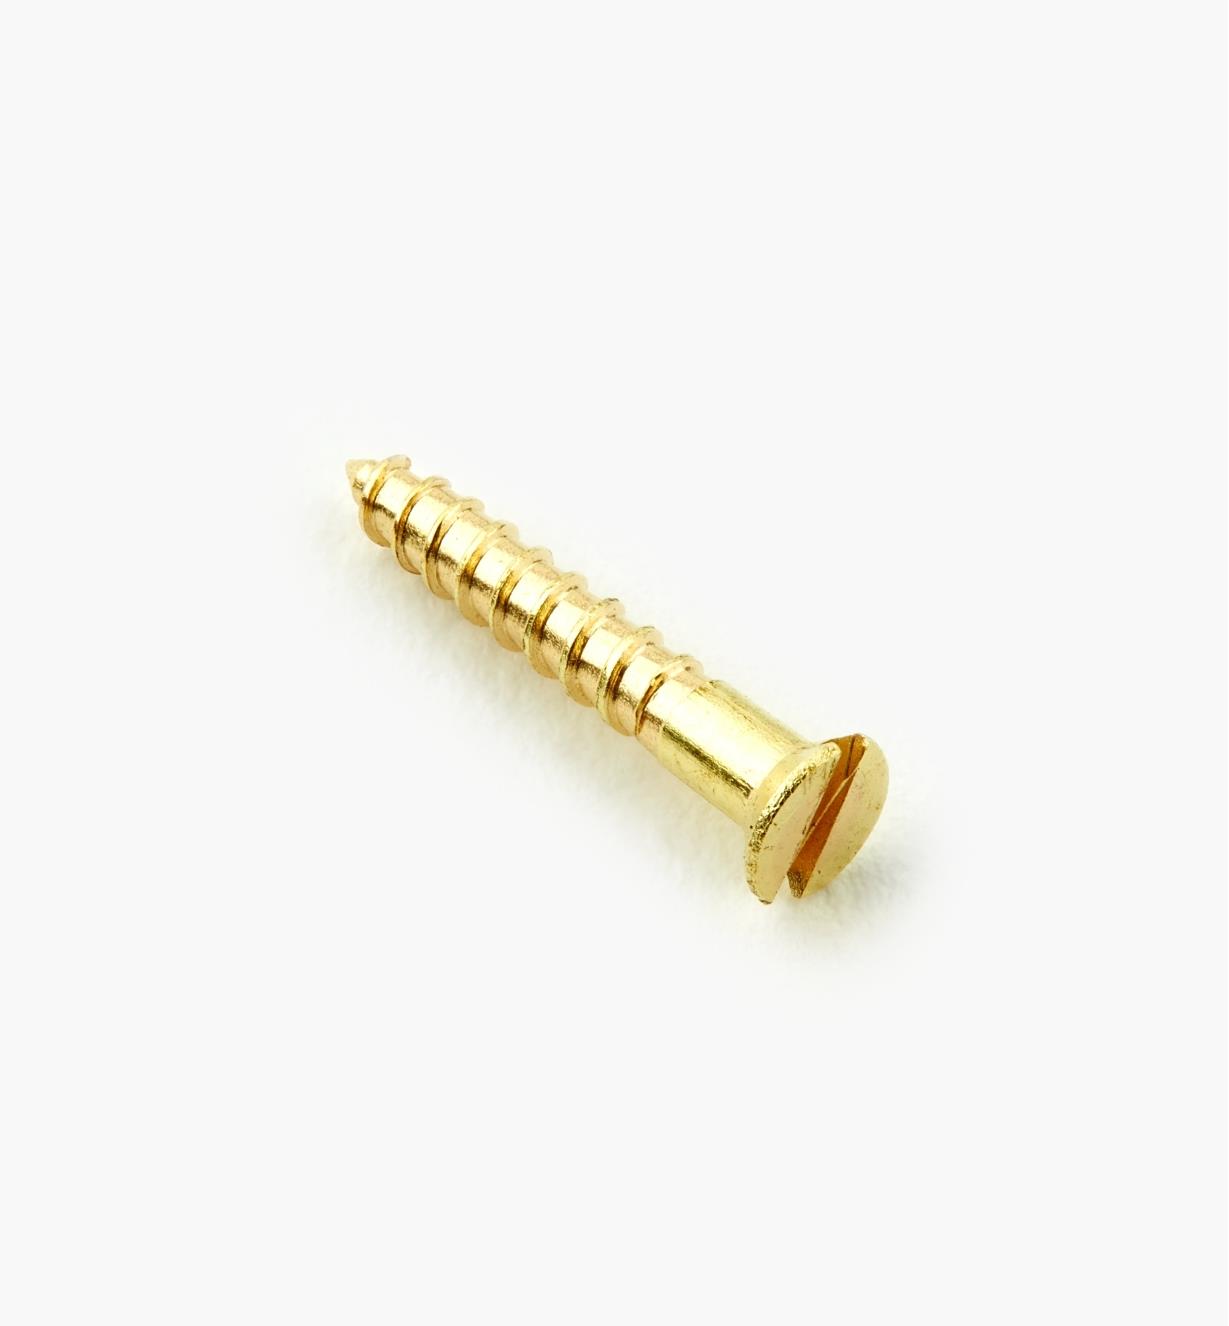 91Z0103X - #1, 1/2" Flat Brass Screws, pkg. of 10